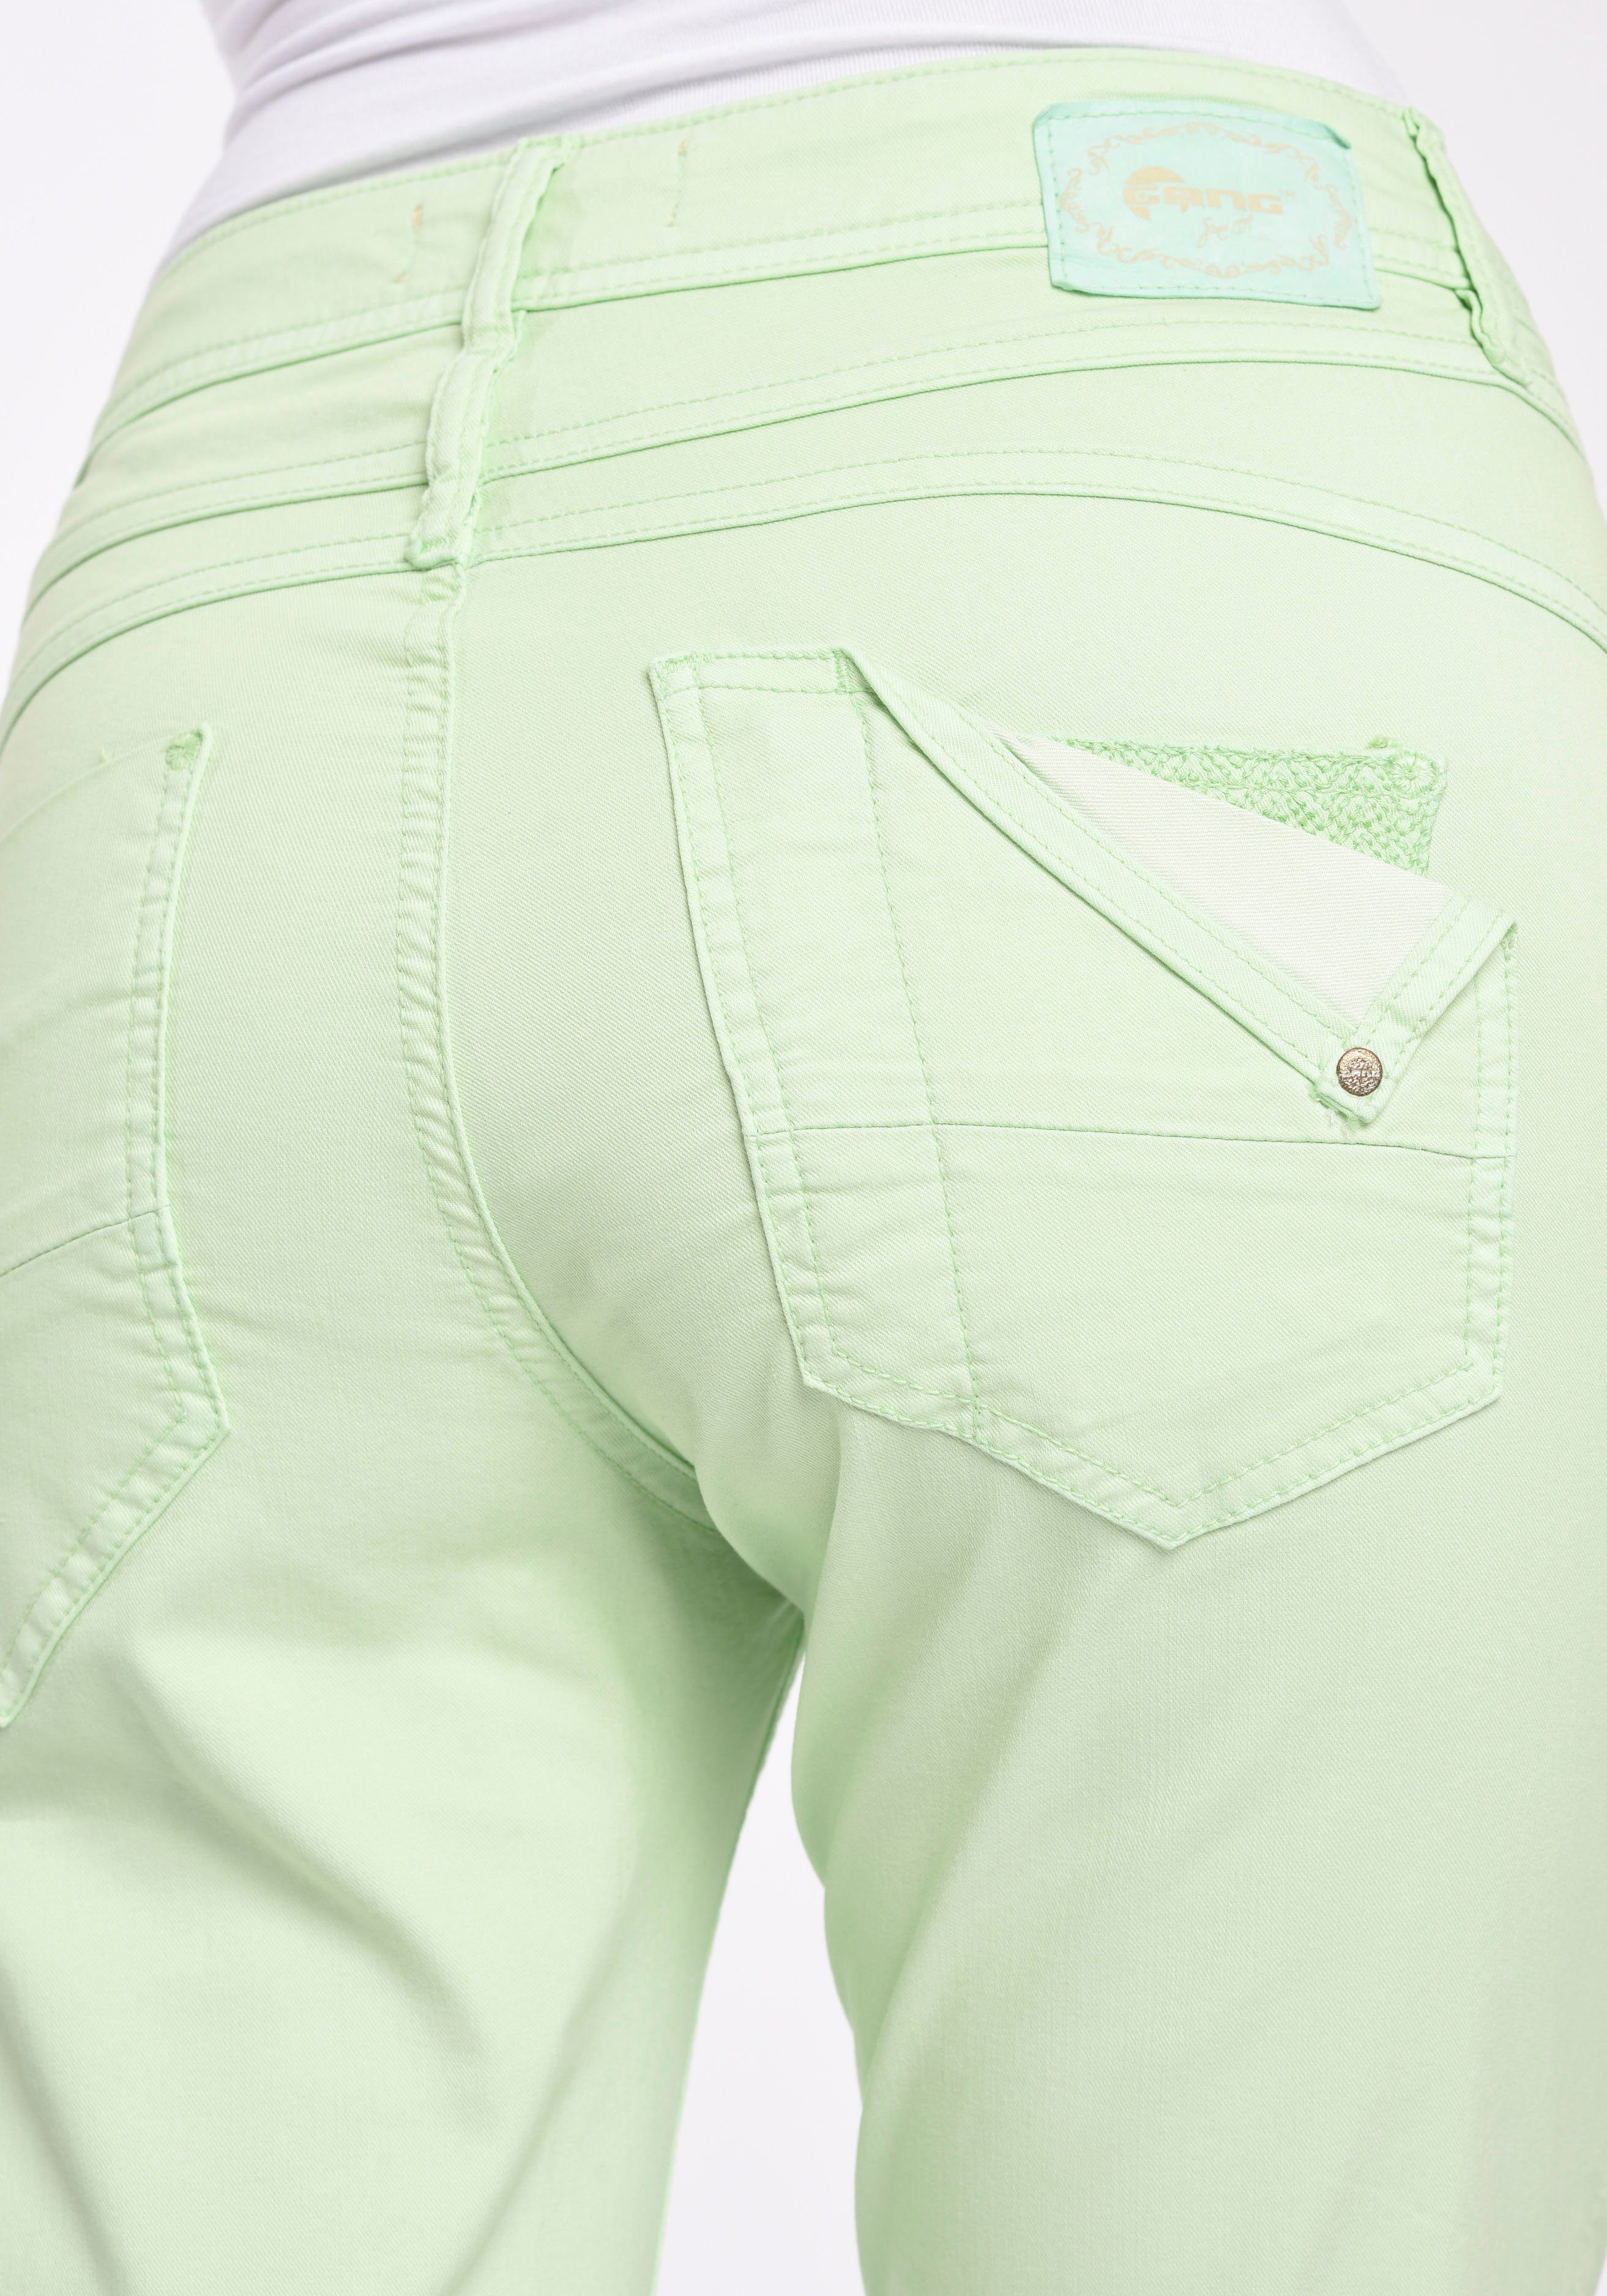 CROPPED GANG Style Beinlänge mit 94AMELIE green verkürzter 5-Pocket bijou 5-Pocket-Hose pastel modisch